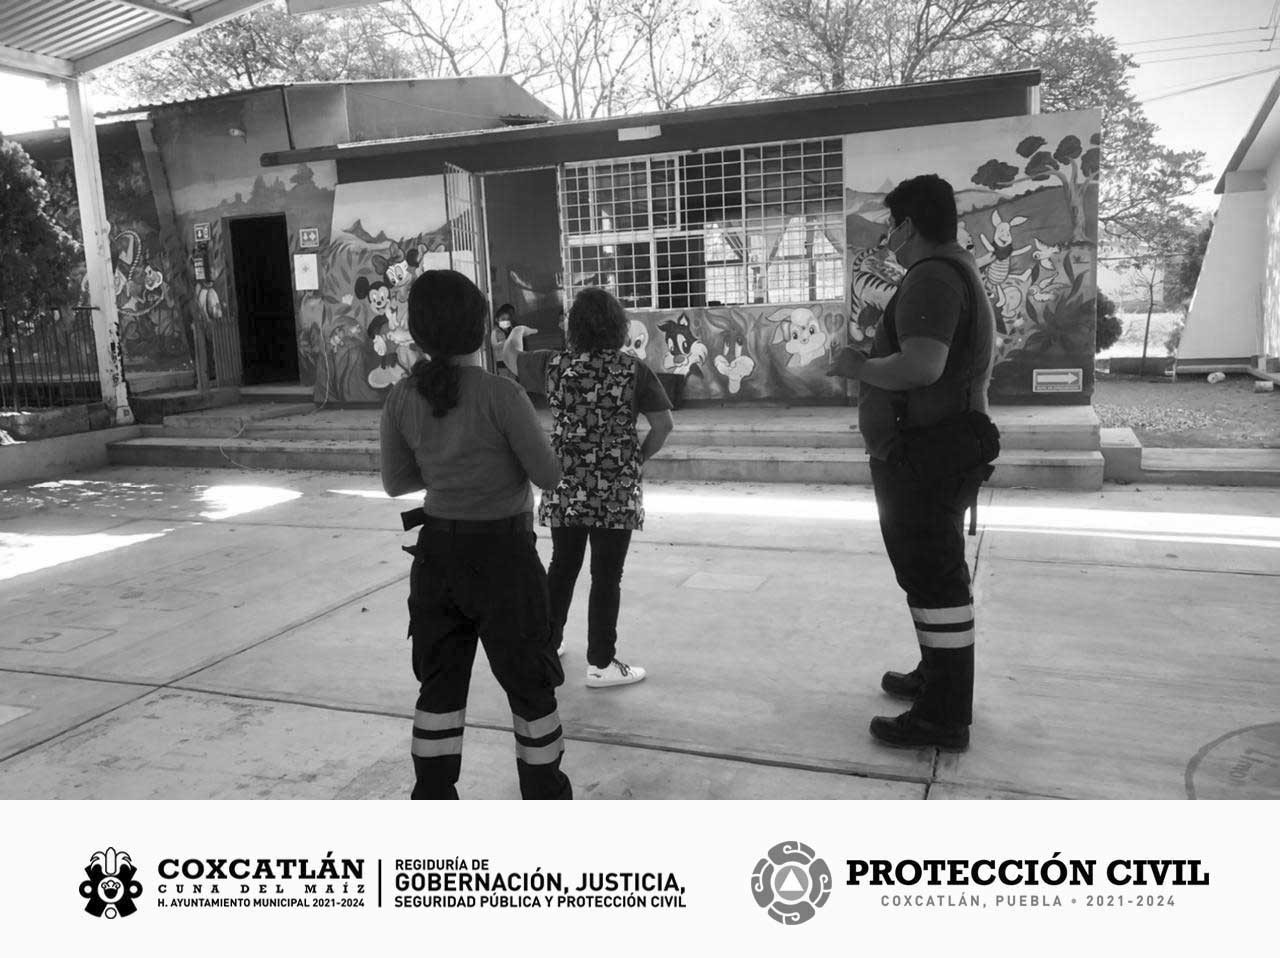 REPORTA PROTECCION CIVIL, SALDO BLANCO EN COXCATLAN